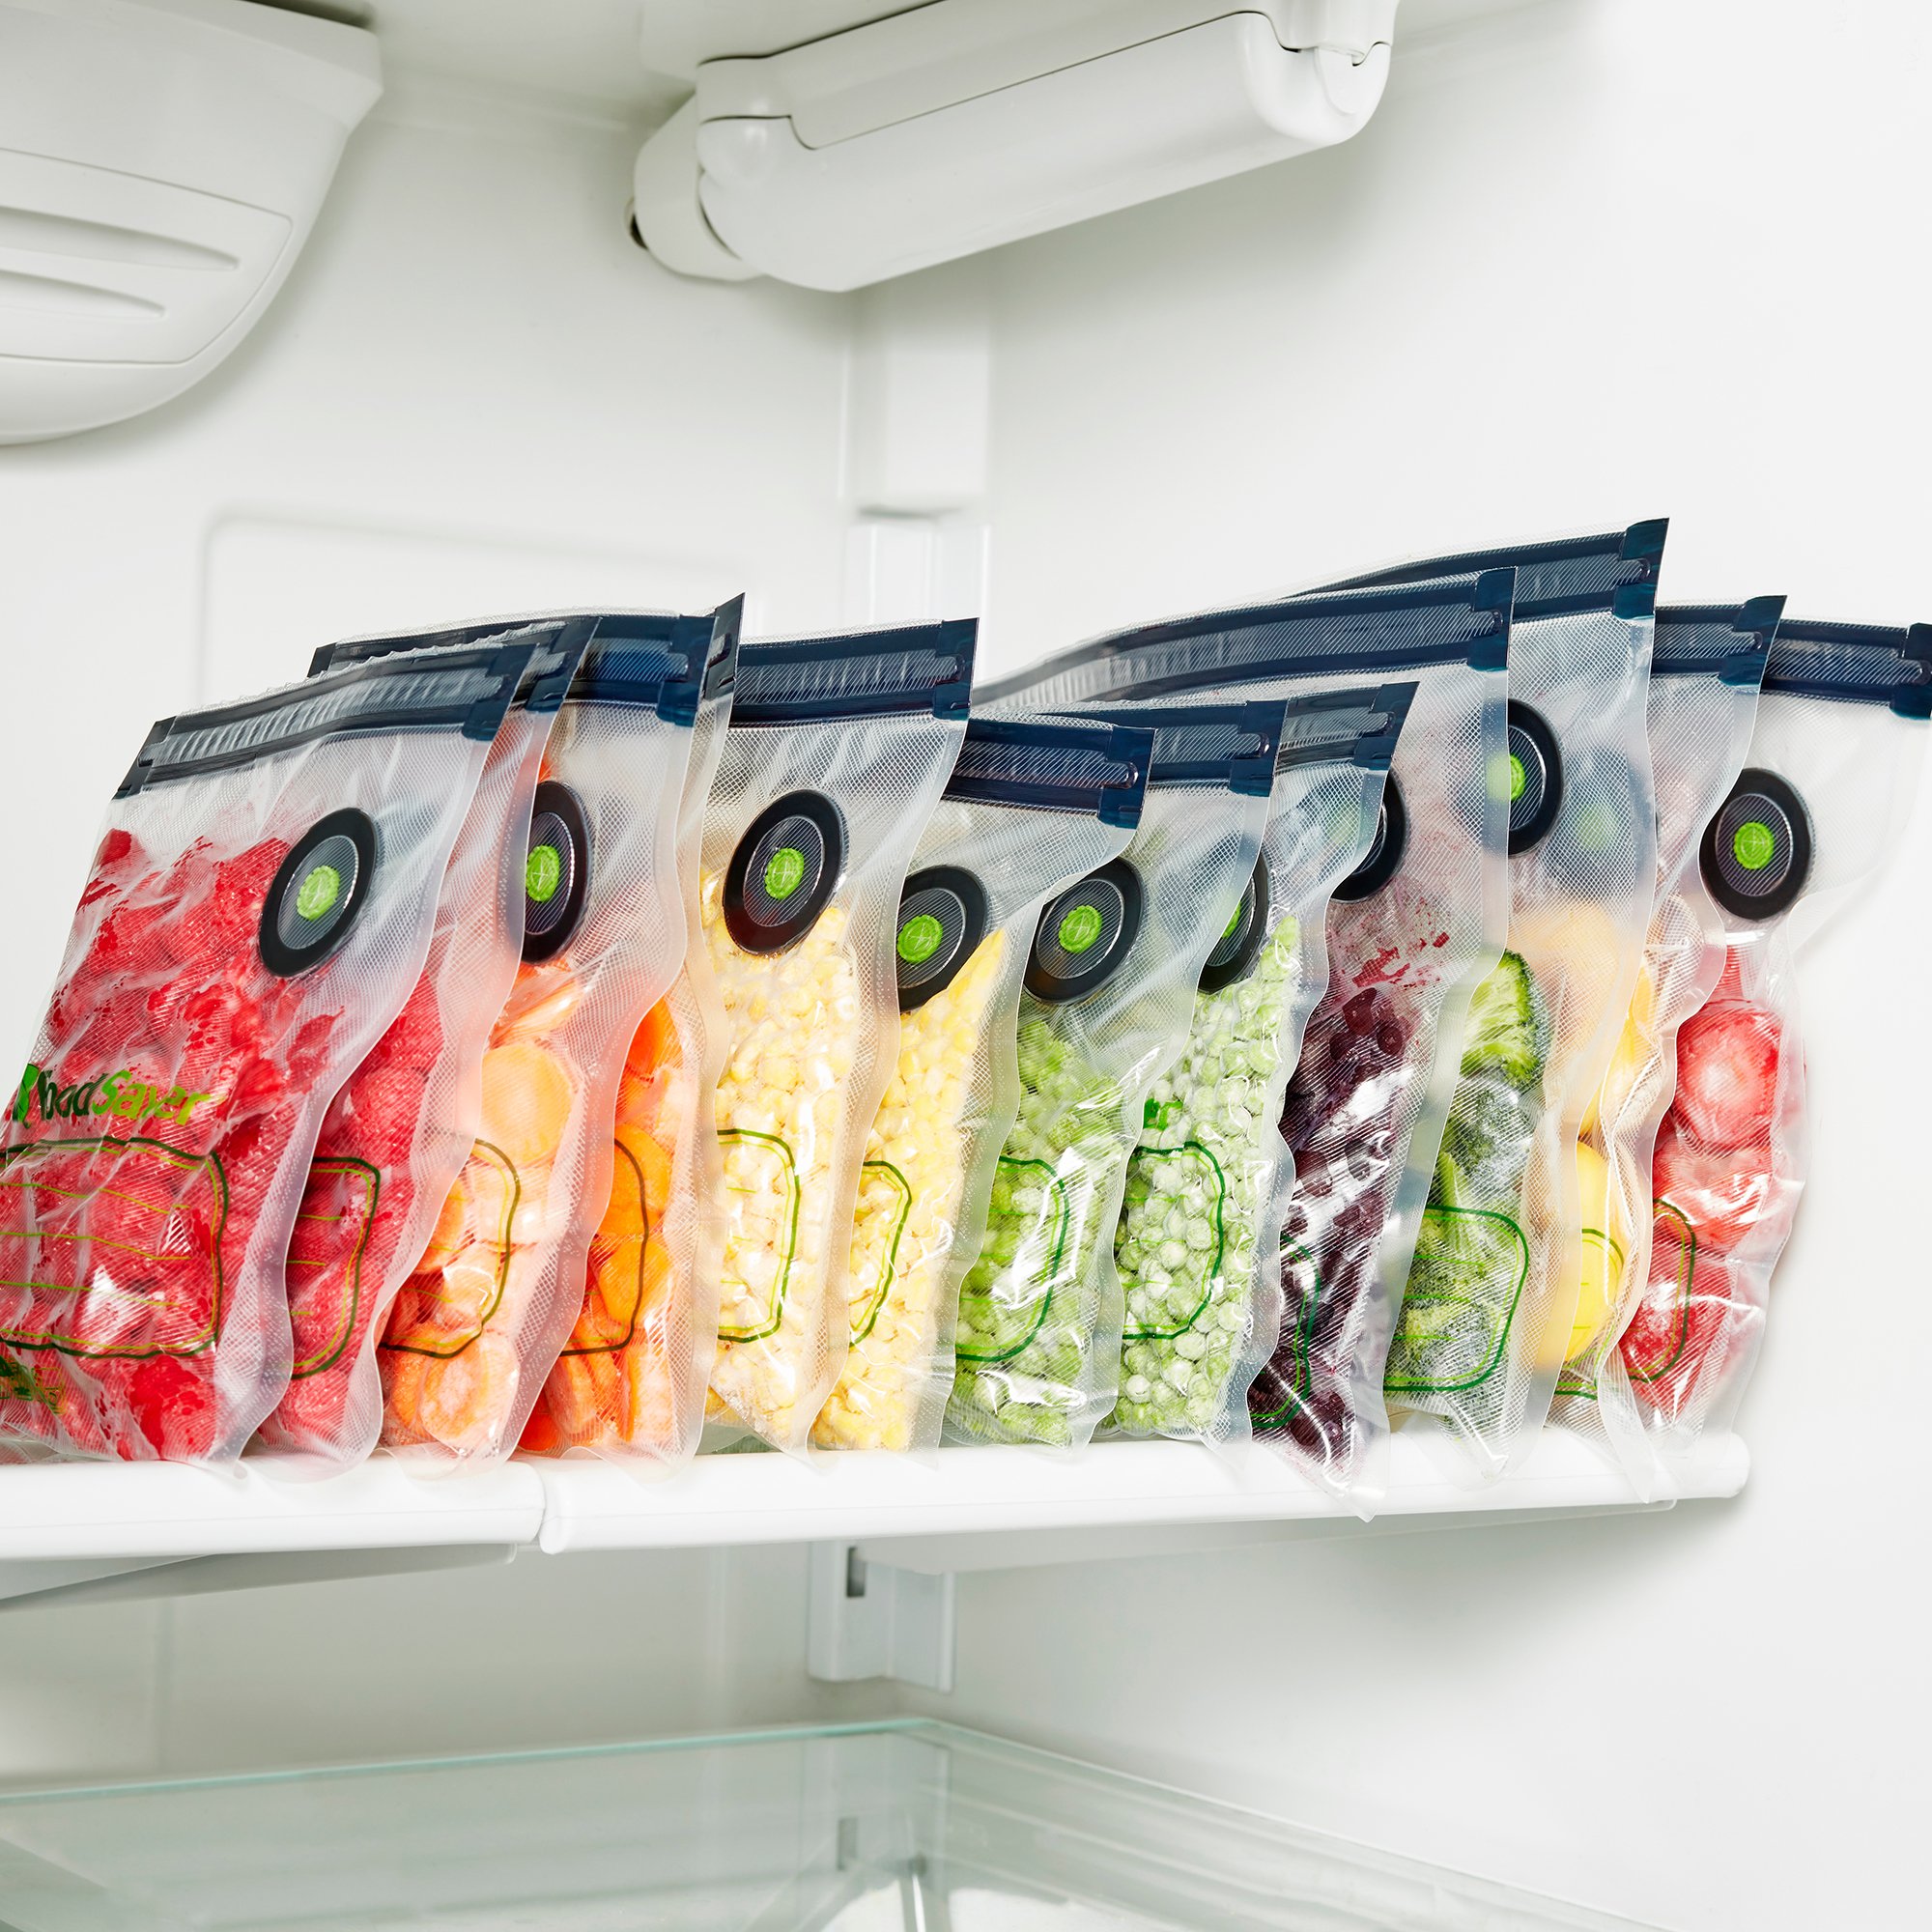 FoodSaver Reusable Quart Vacuum Zipper Bags, for Use with FoodSaver  Handheld Vacuum Sealers 10 Count